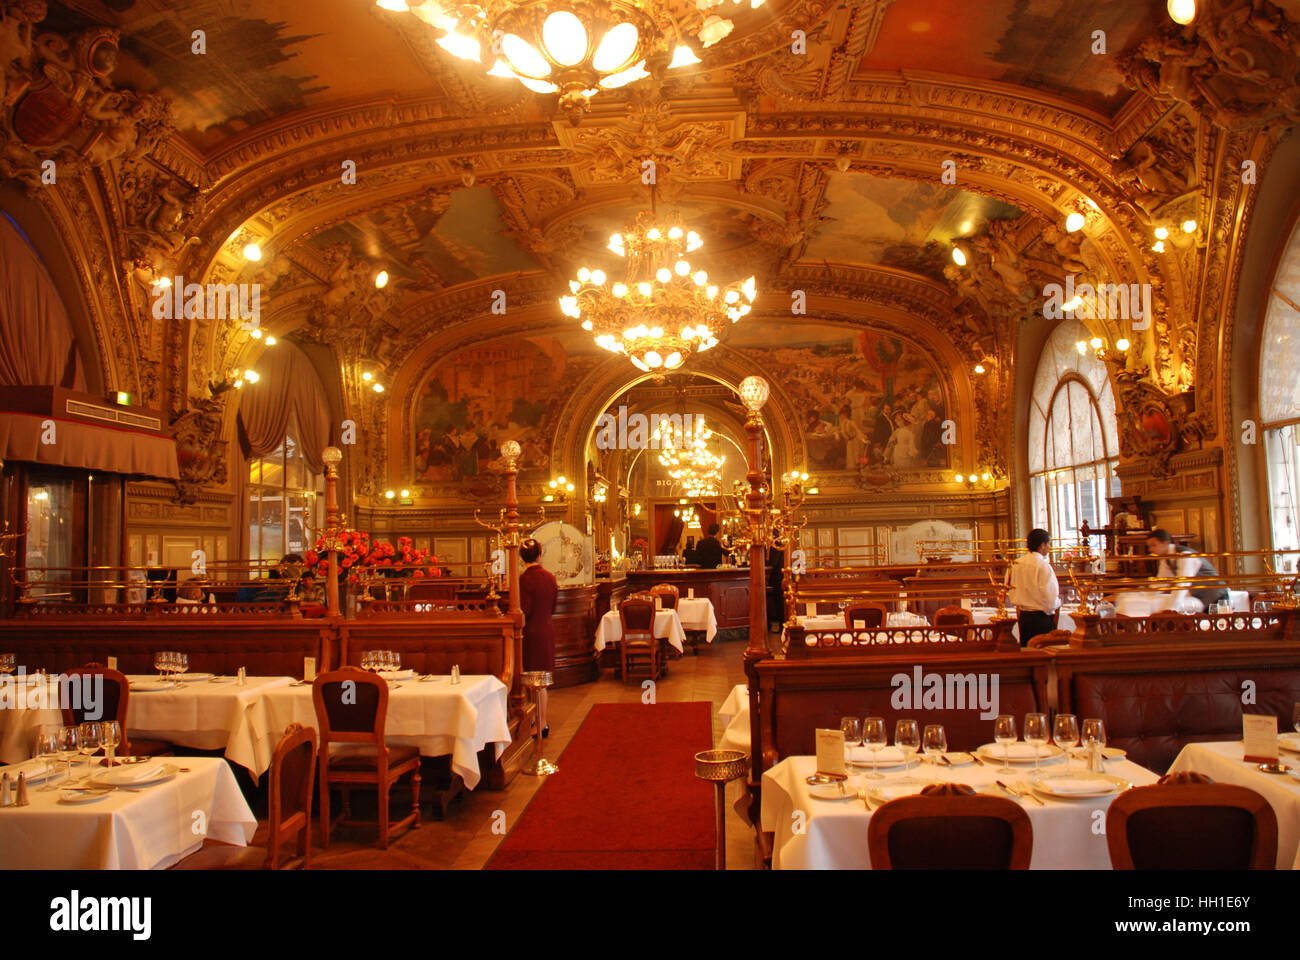 ⇒ Le Train Bleu, Gourmet Restaurant Gare de Lyon